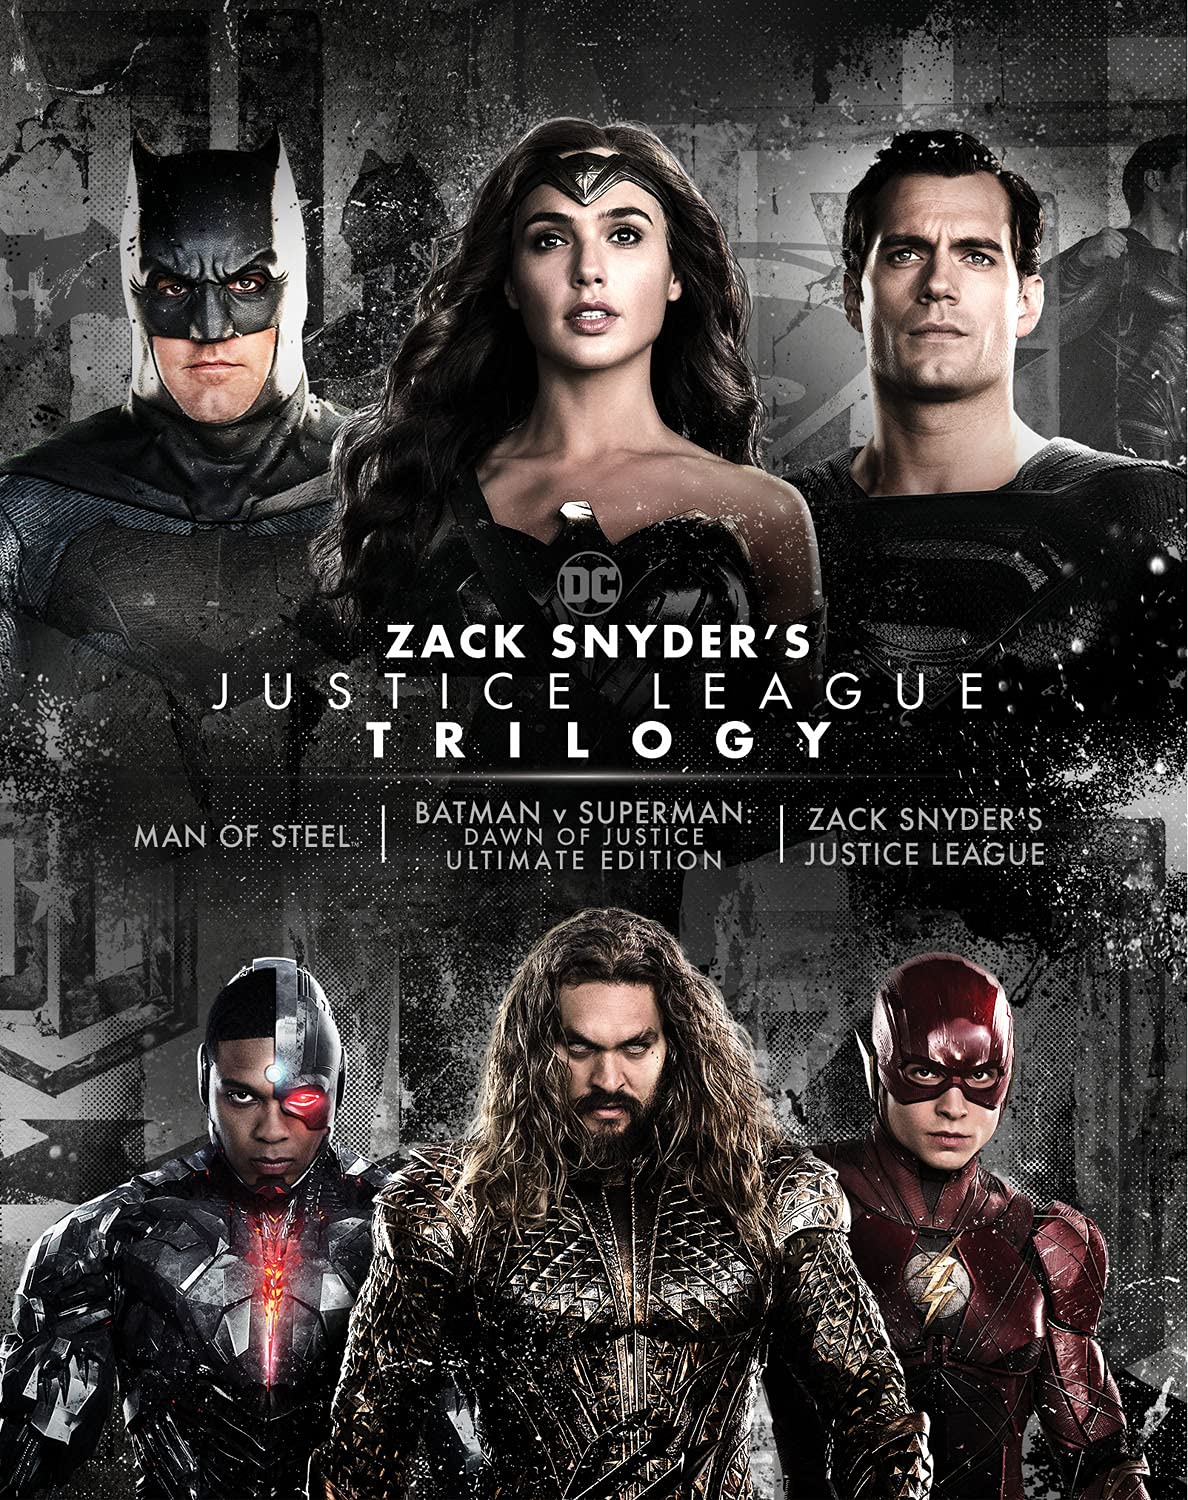 Zack Snyder's Justice League Trilogy 4k Blu-ray